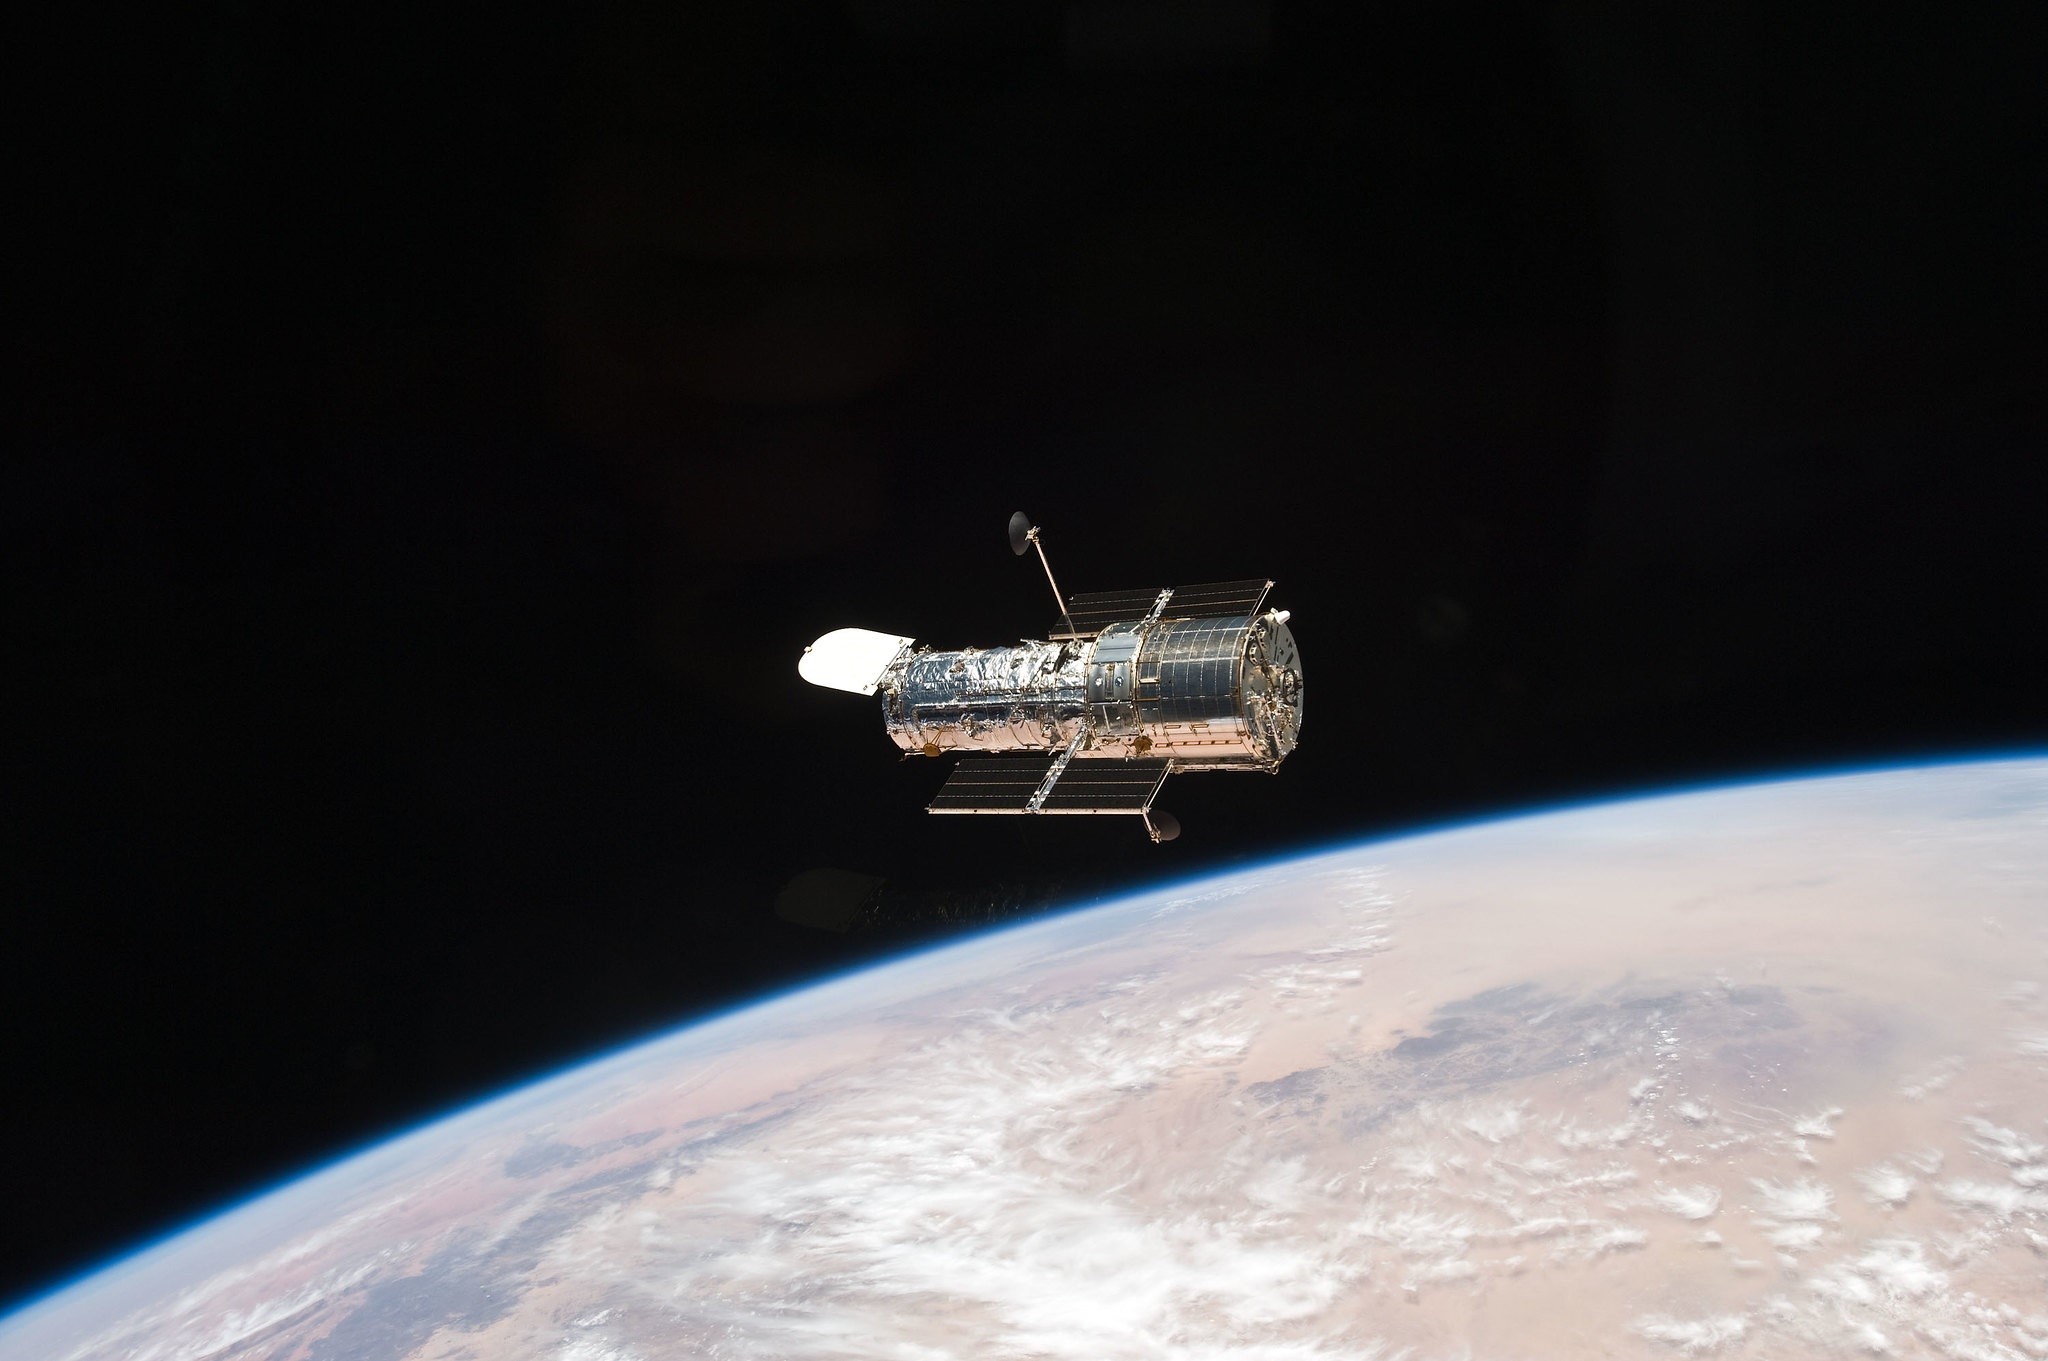 02-11-2021 Telescopio espacial Hubble
POLITICA INVESTIGACIÓN Y TECNOLOGÍA
NASA
